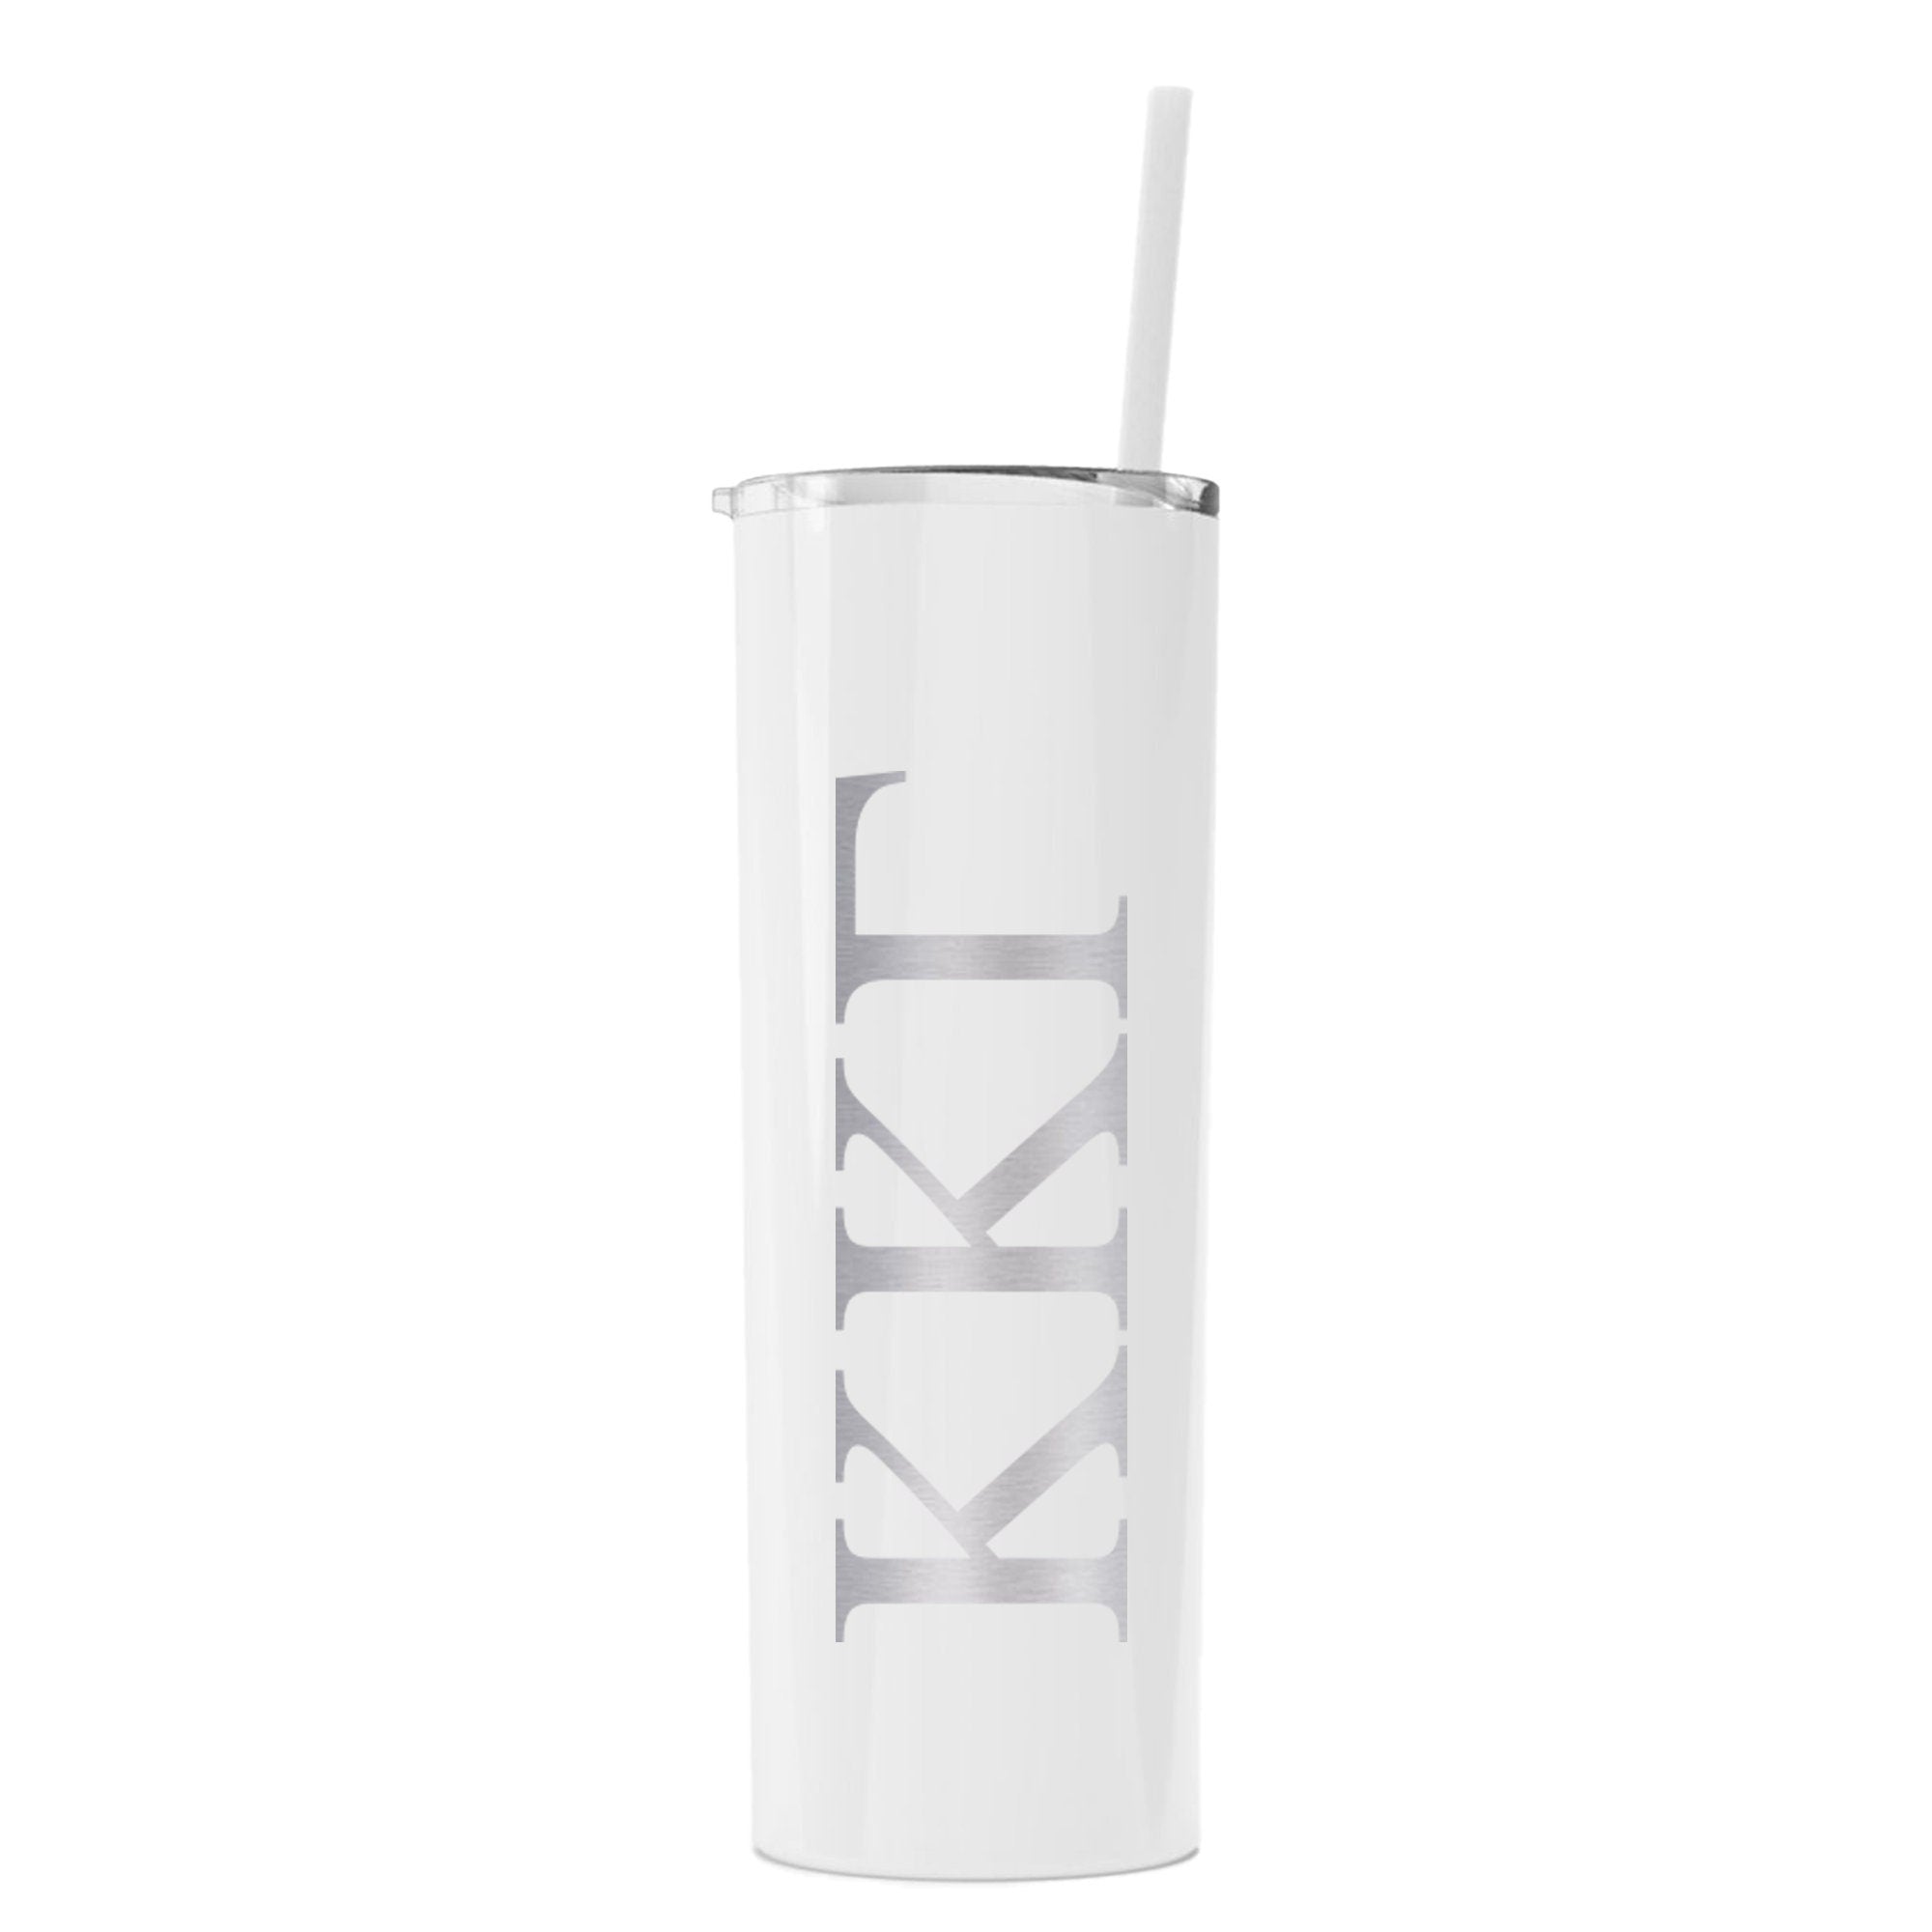 Kappa Kappa Gamma Greek Letter Skinny Tumbler with Straw - Go Greek Chic